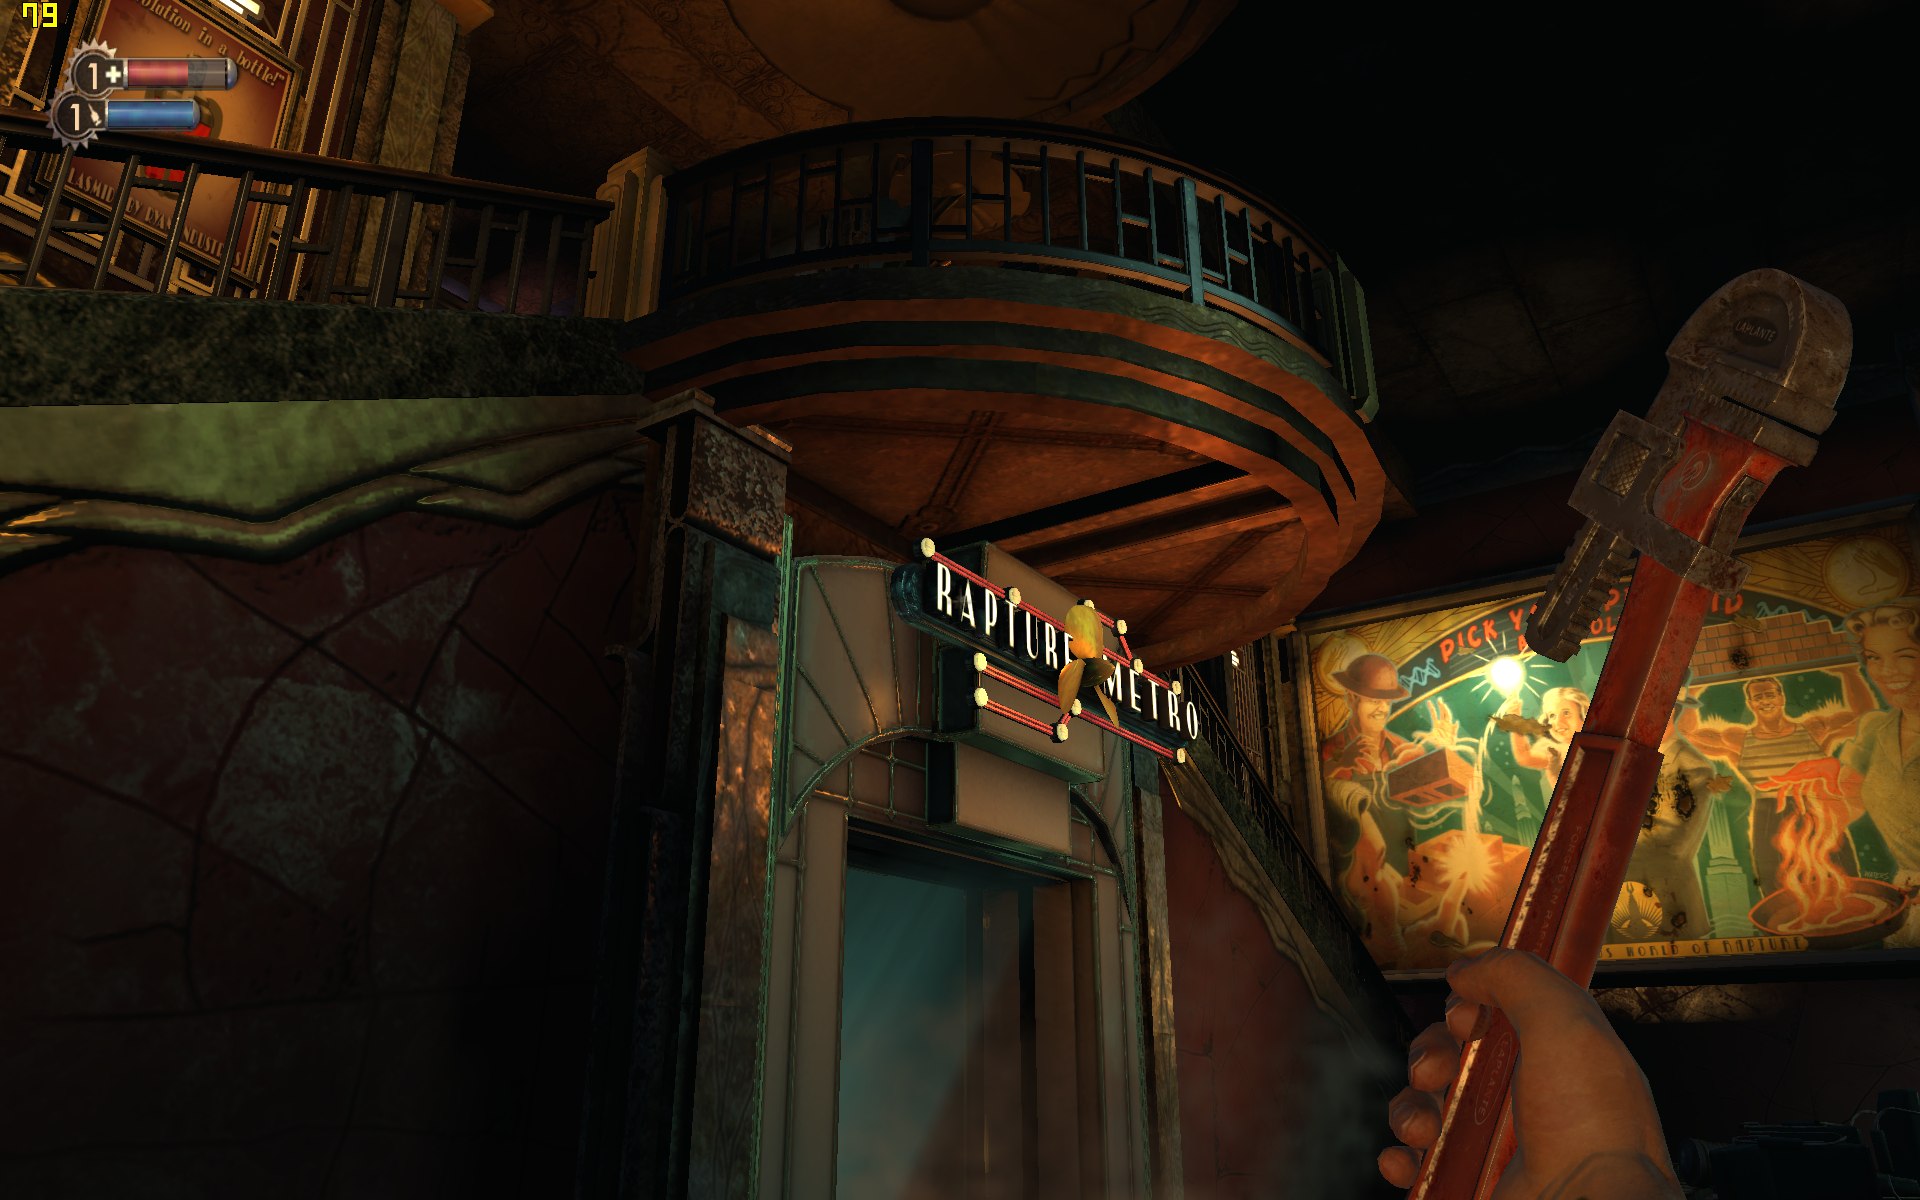 Hra Bioshock - výkon a nastavení kvality obrazu